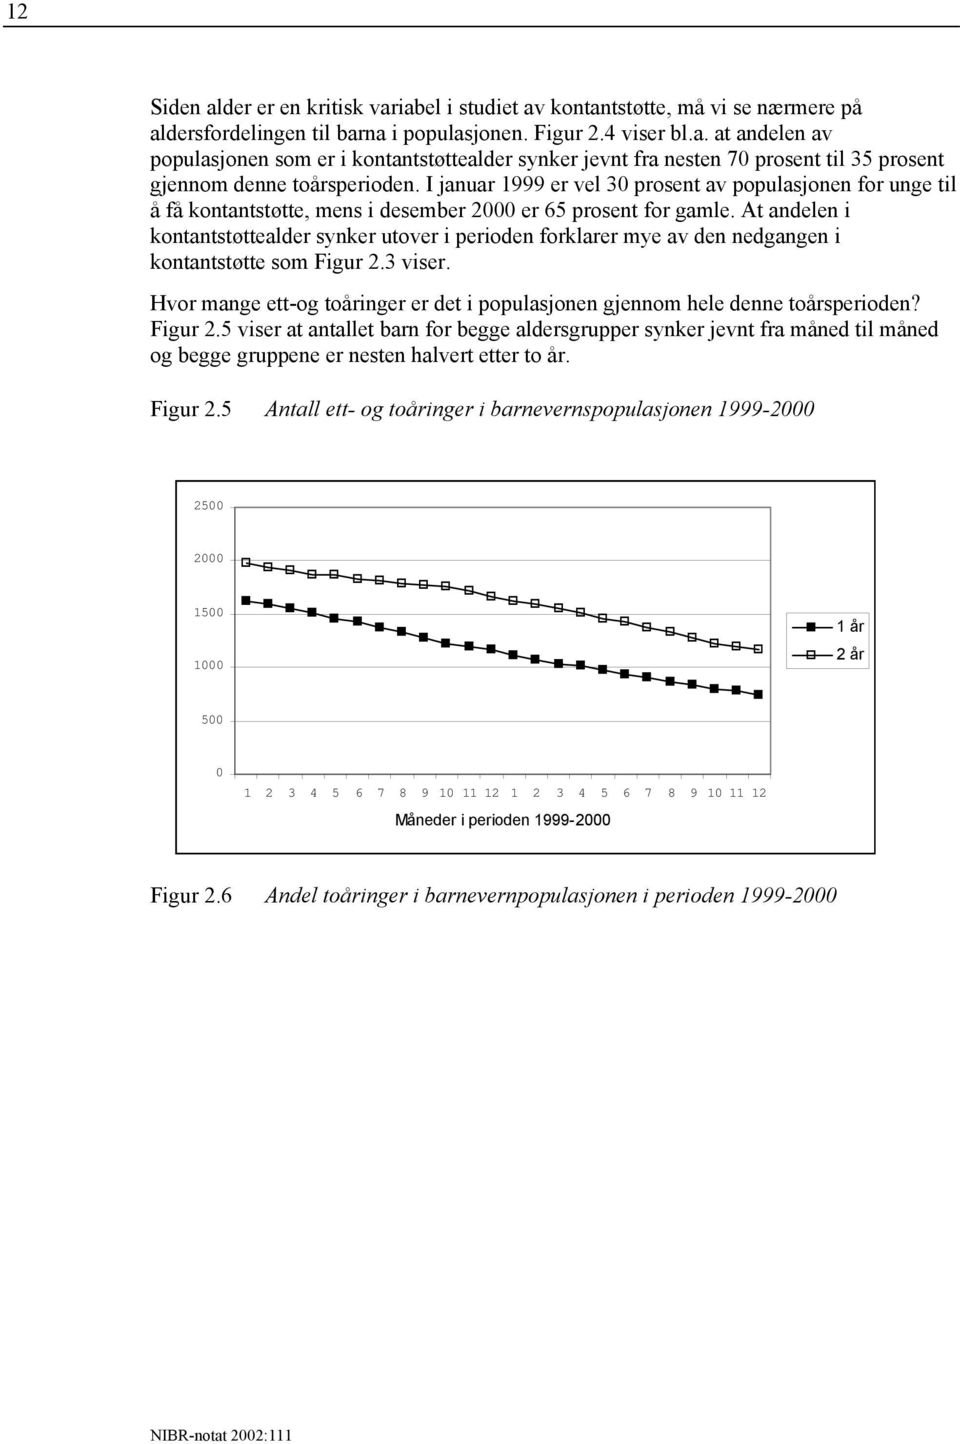 At andelen i kontantstøttealder synker utover i perioden forklarer mye av den nedgangen i kontantstøtte som Figur 2.3 viser.